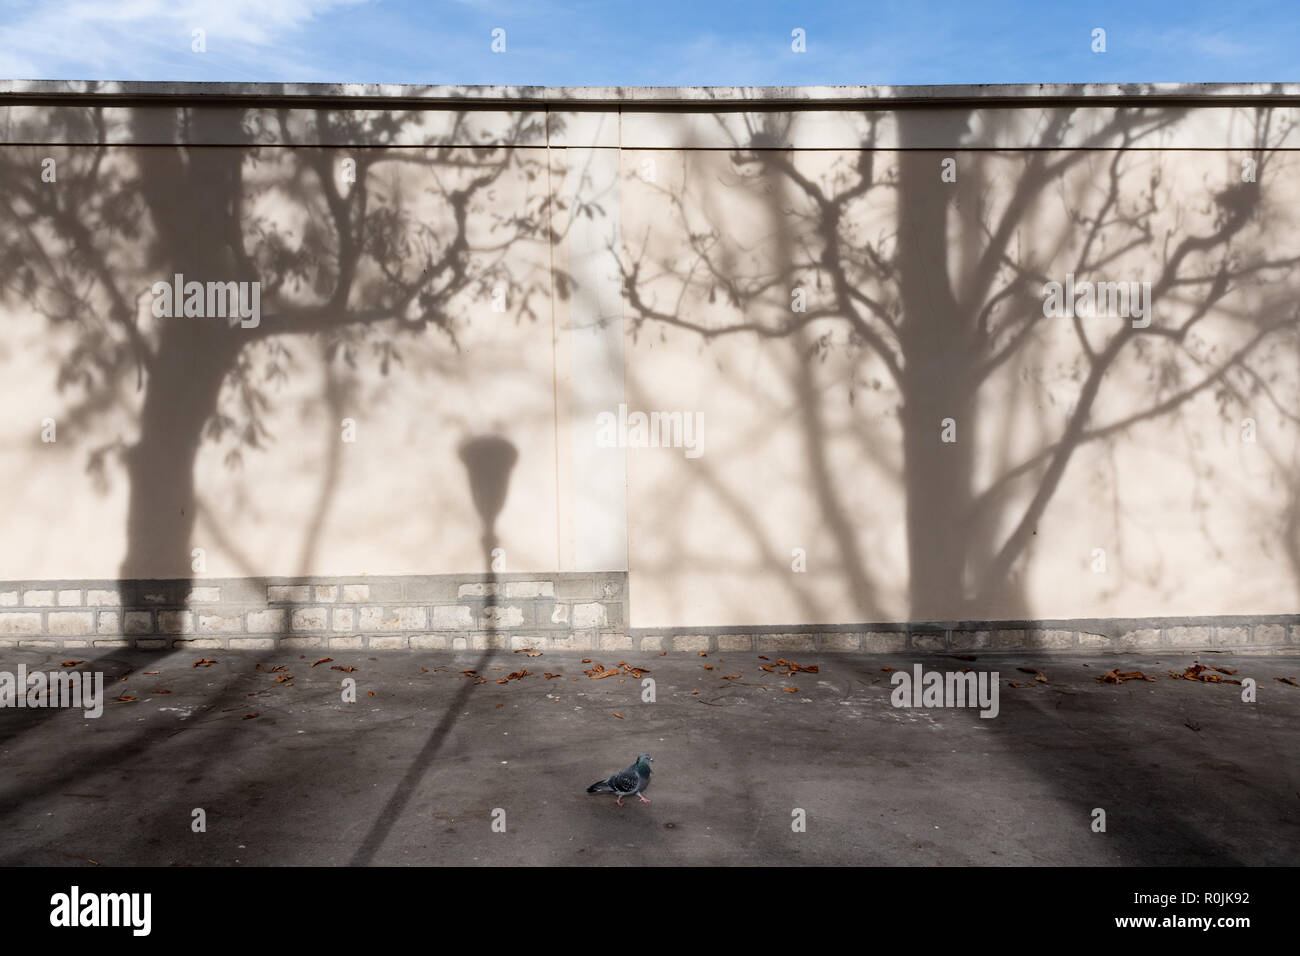 Schatten der Bäume und Laterne an der Wand in Paris. Stockfoto